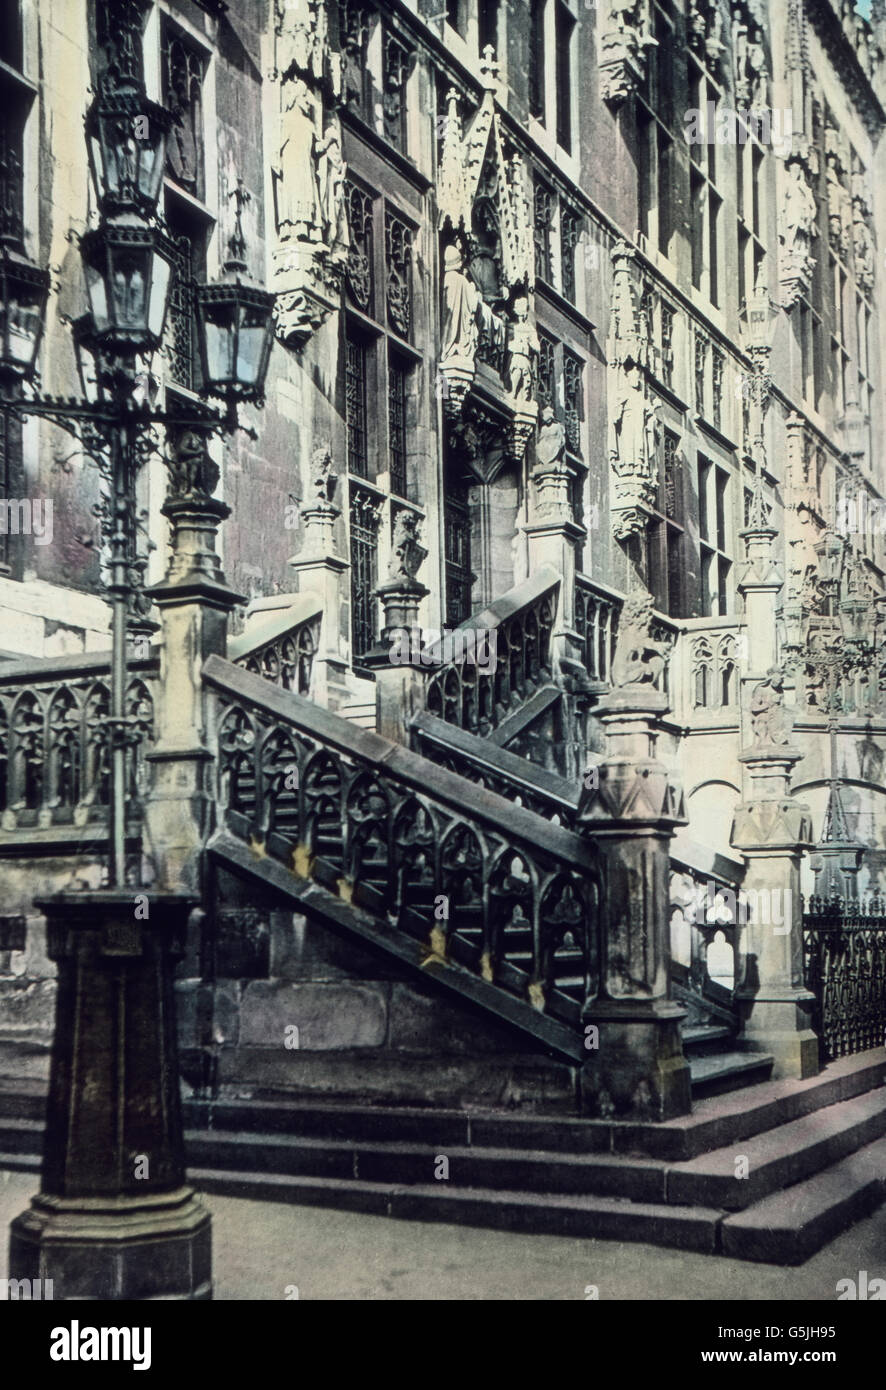 Freitreppe und Portal zum Rathaus in der Stadt Aachen, 1920er Jahre. Aachen city hall stairs and gate, 1920s. Stock Photo